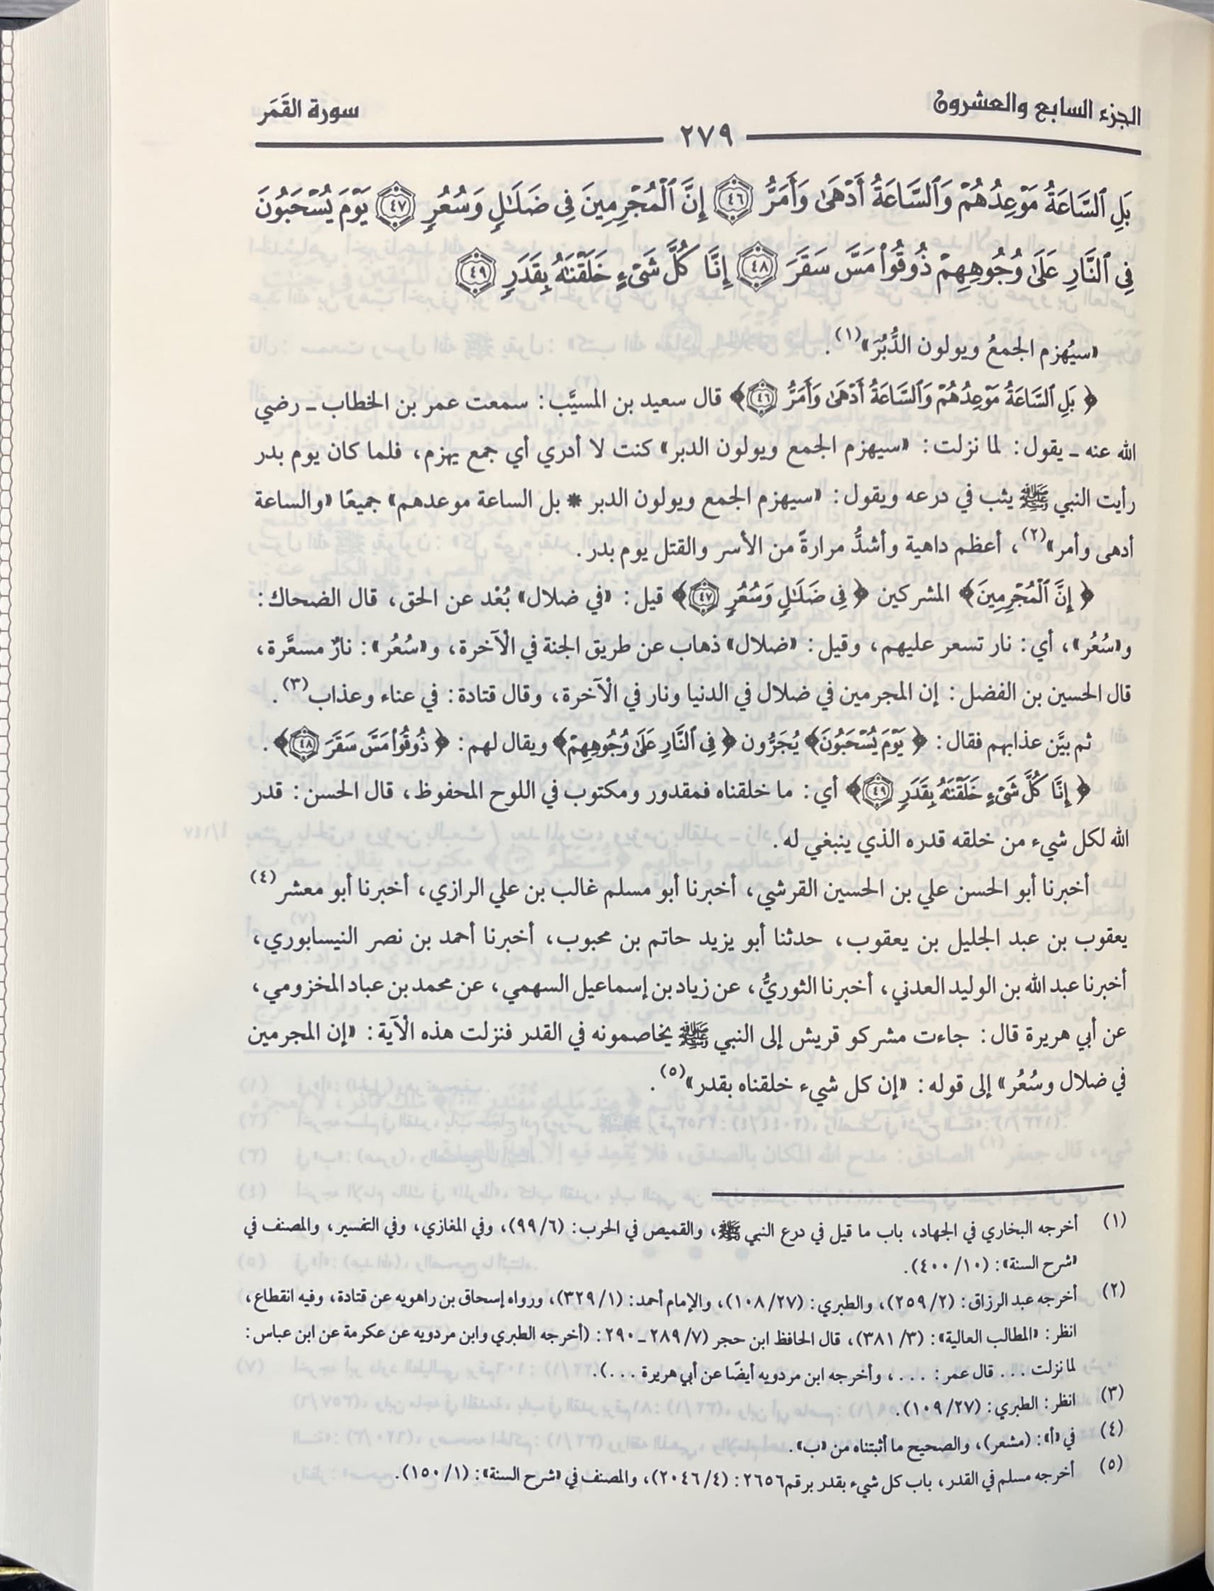 تفسير البغوي معالم التنزيل    Tafisr Al Baghawi Maalim At Tanzeel (4 Volume Set)